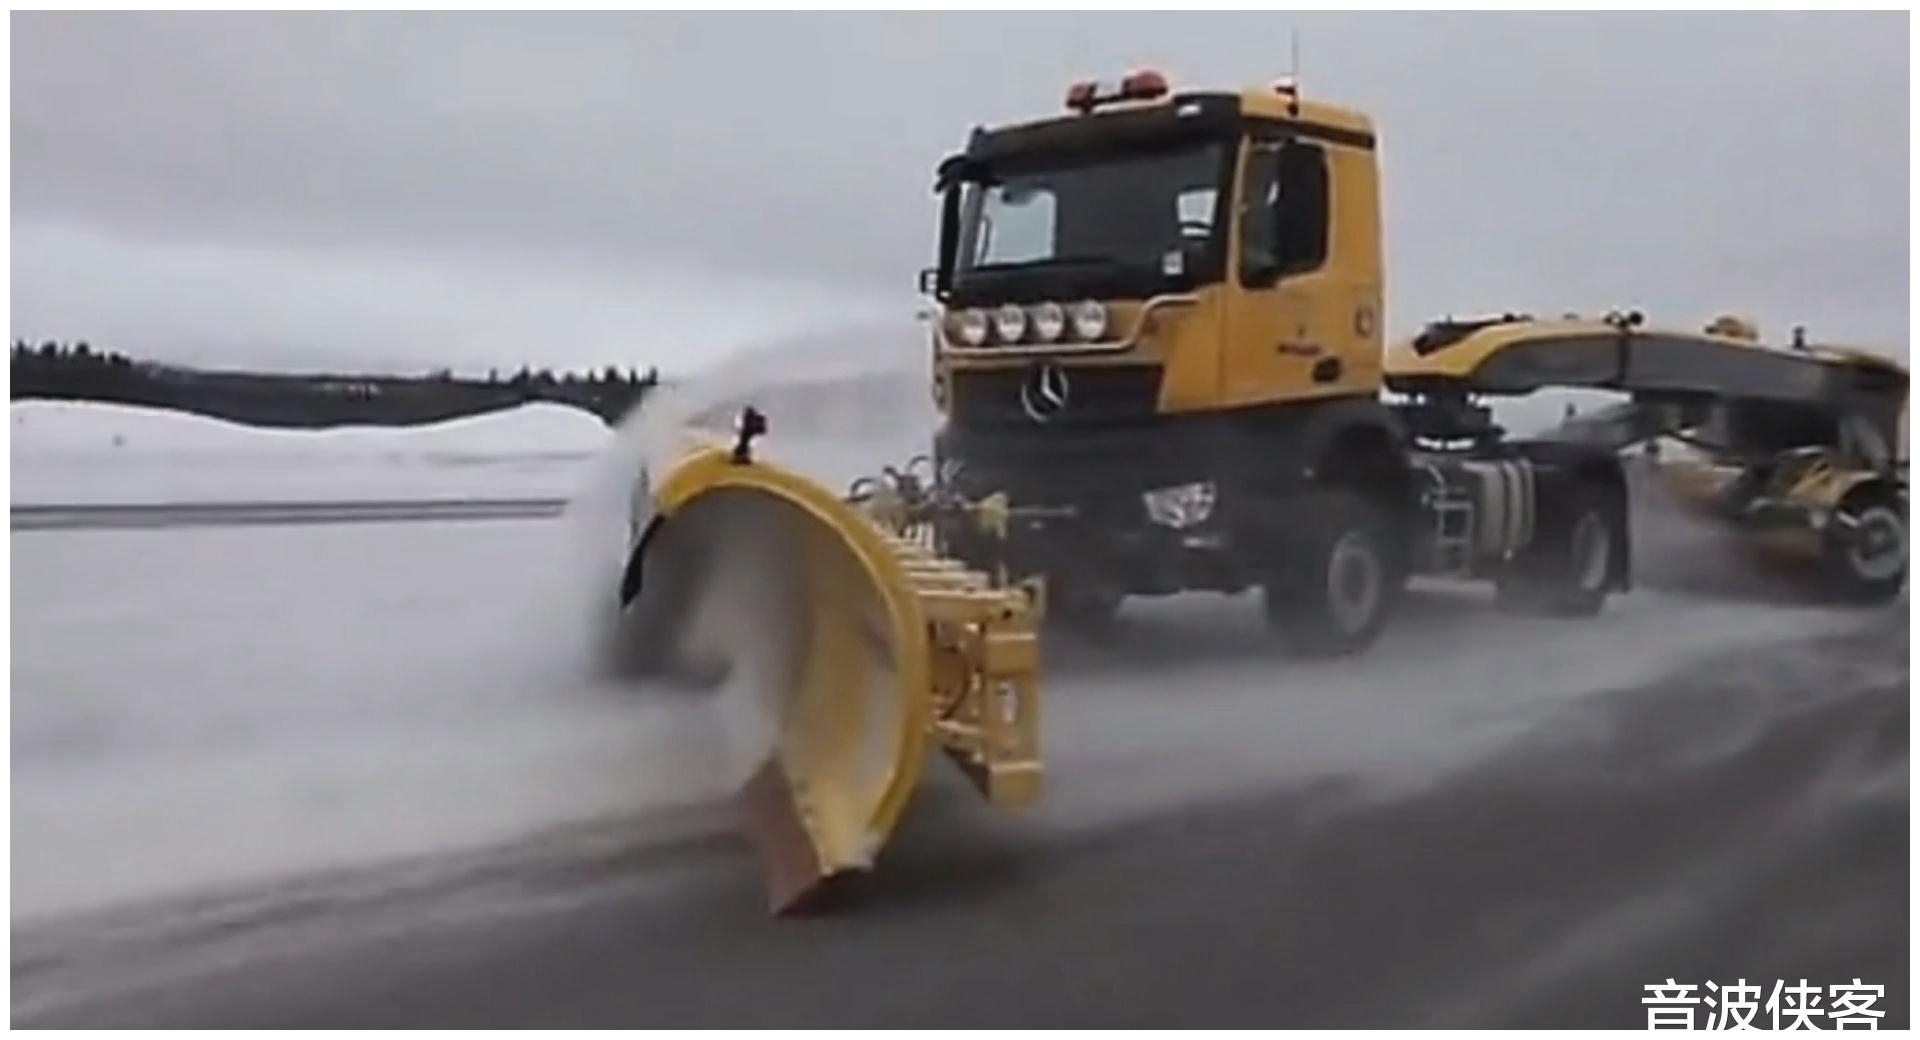 暴雪的克星大型铲雪车迅速铲除路面上的冰雪道路畅通